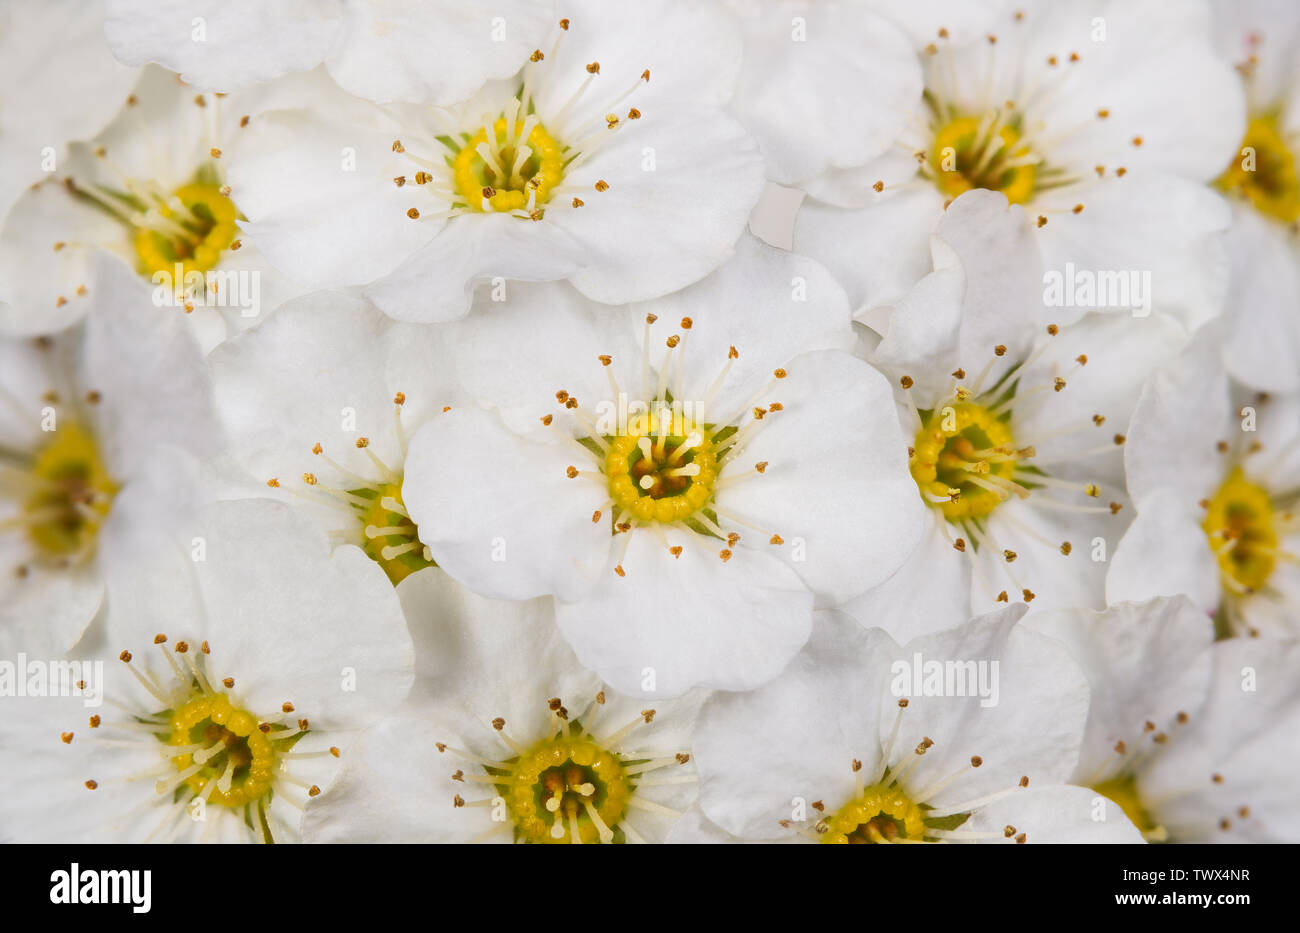 Delicate texture floreali. Vanhoutte spirea fiori in dettaglio. Spiraea vanhouttei. Sfondo romantico. Snowy White blumi, centri di giallo, lunghi stami. Foto Stock